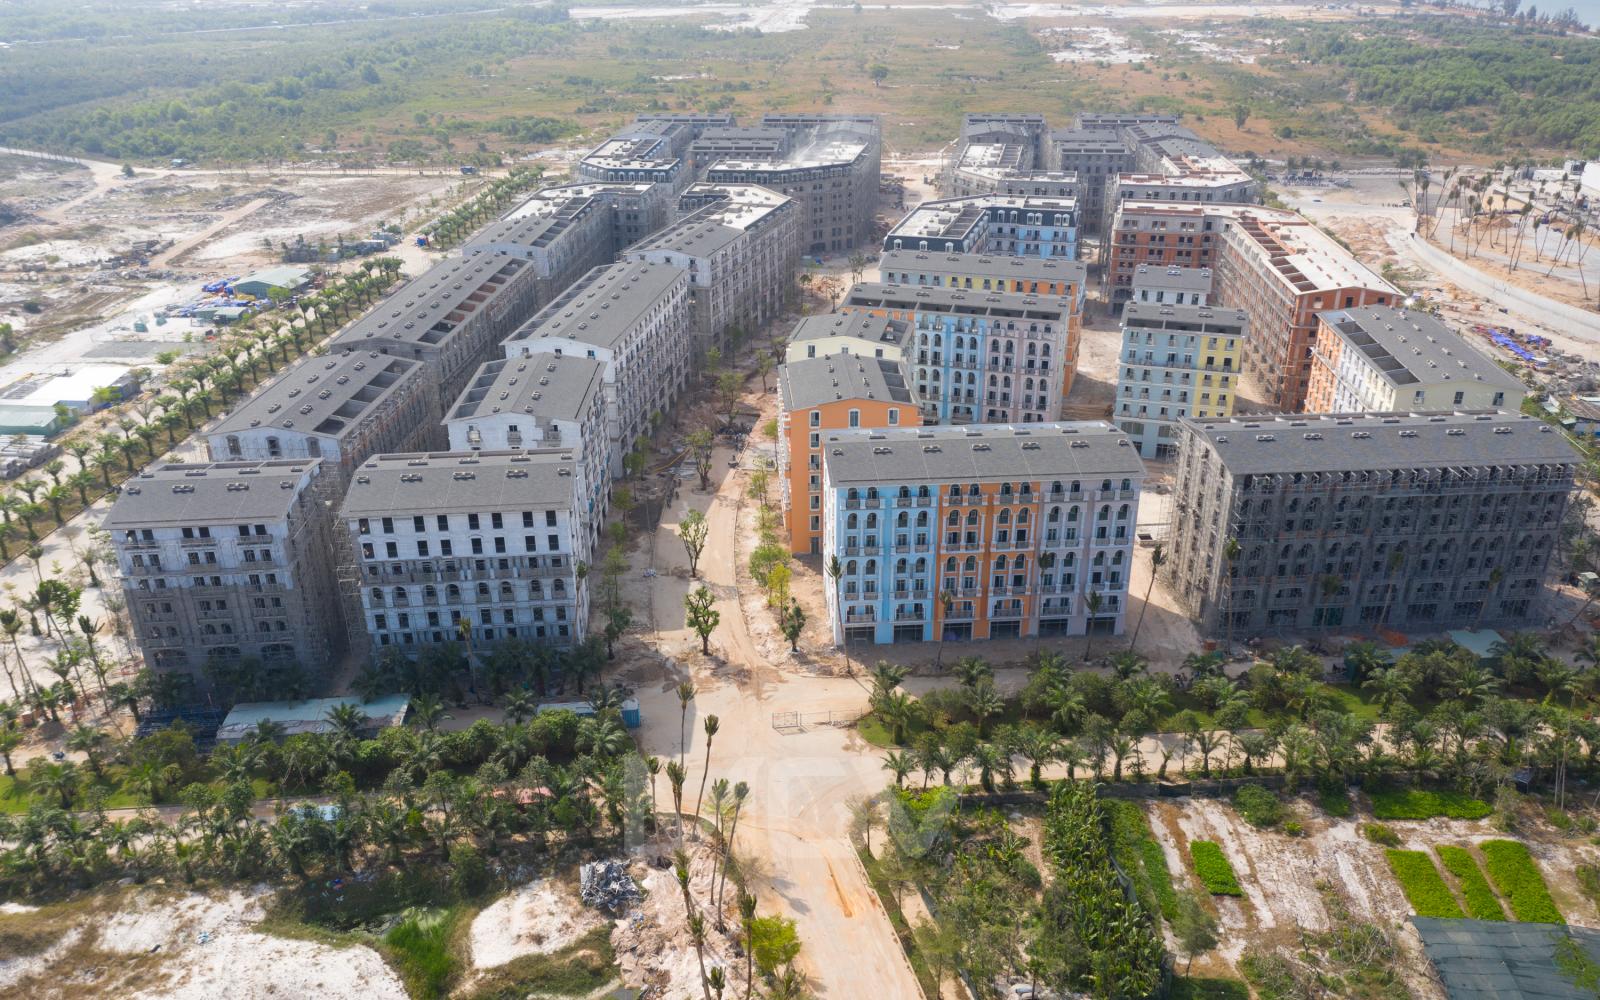 Chuyển nhượng khách sạn 24 phòng tai trung tâm du lịch Bãi Trường Phú Quốc, đã xây dựng xong, liền kề InterContinental